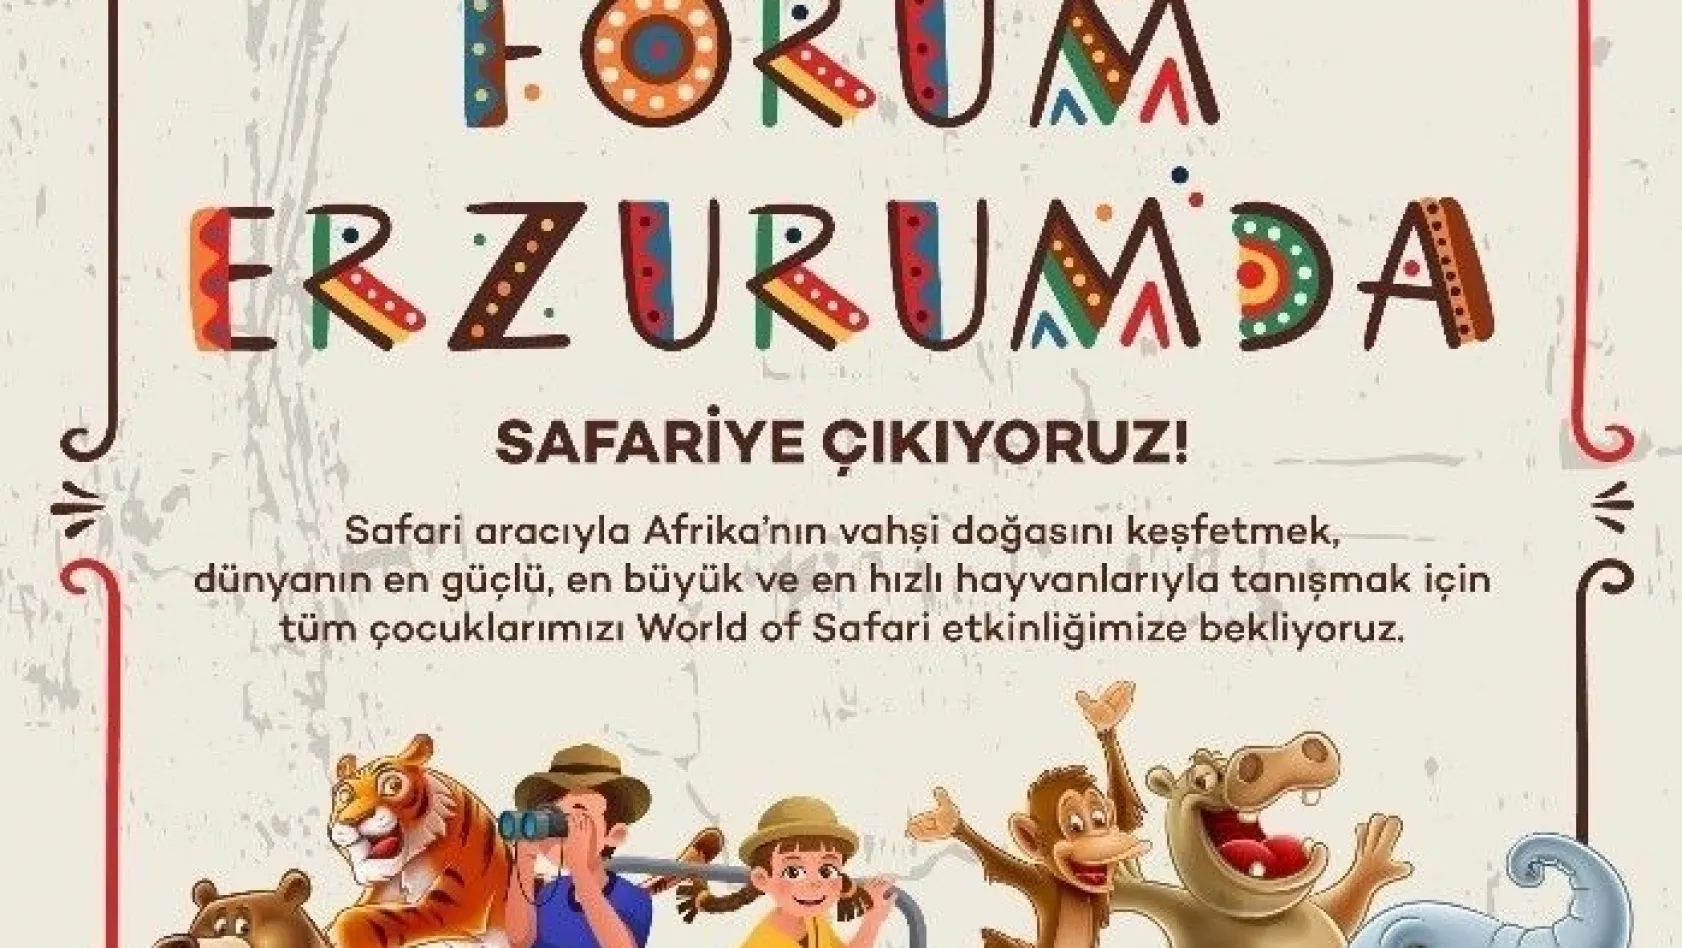 Forum Erzurum tüm çocukları safari heyecanına davet etti
